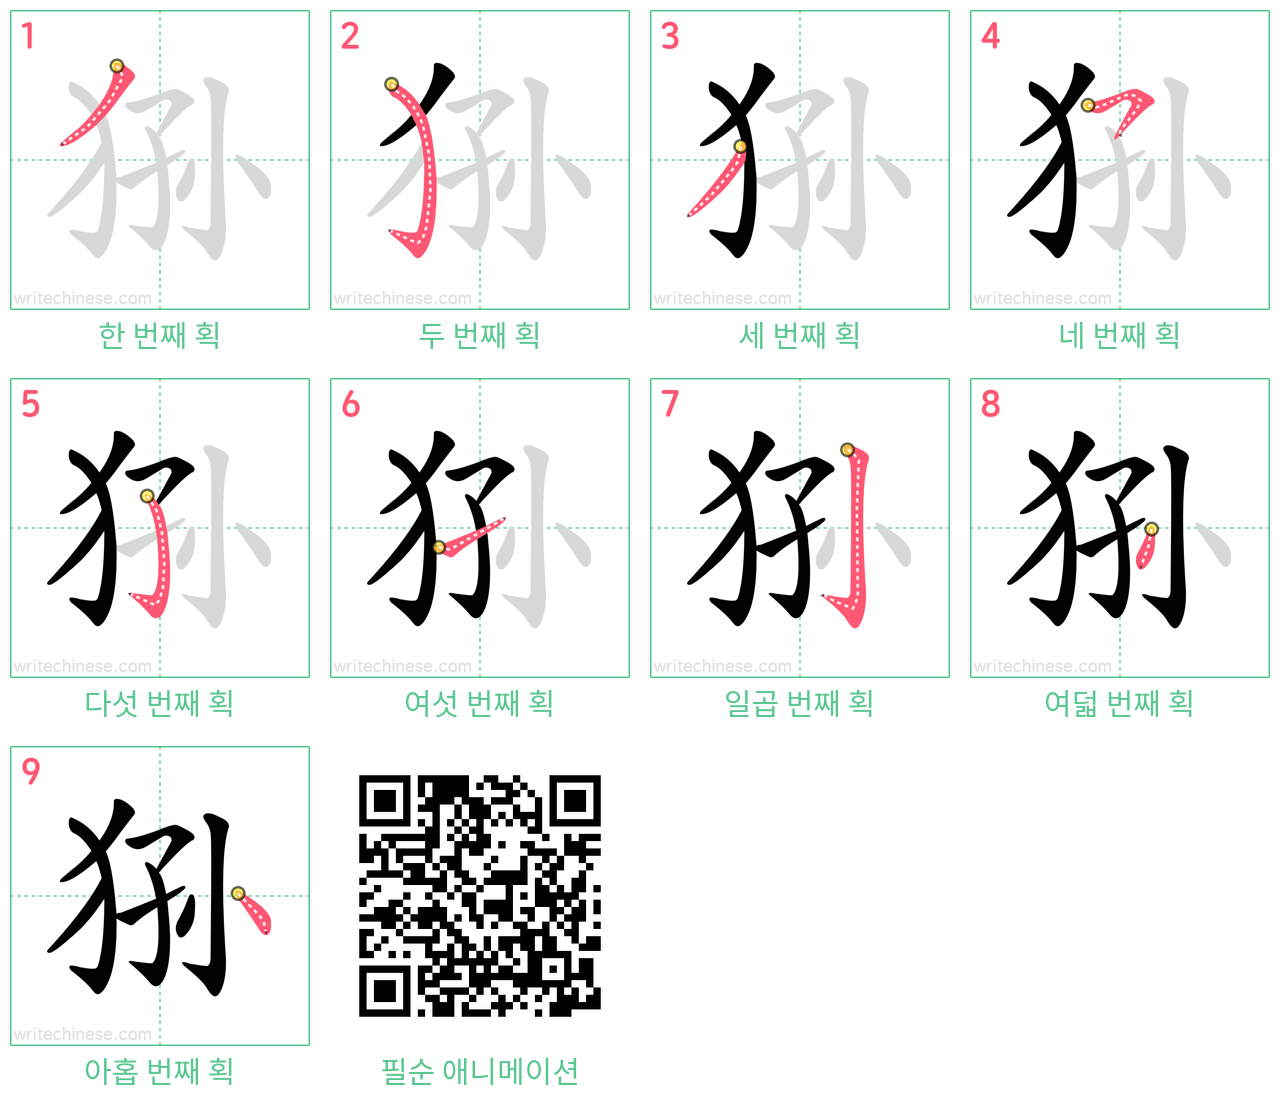 狲 step-by-step stroke order diagrams